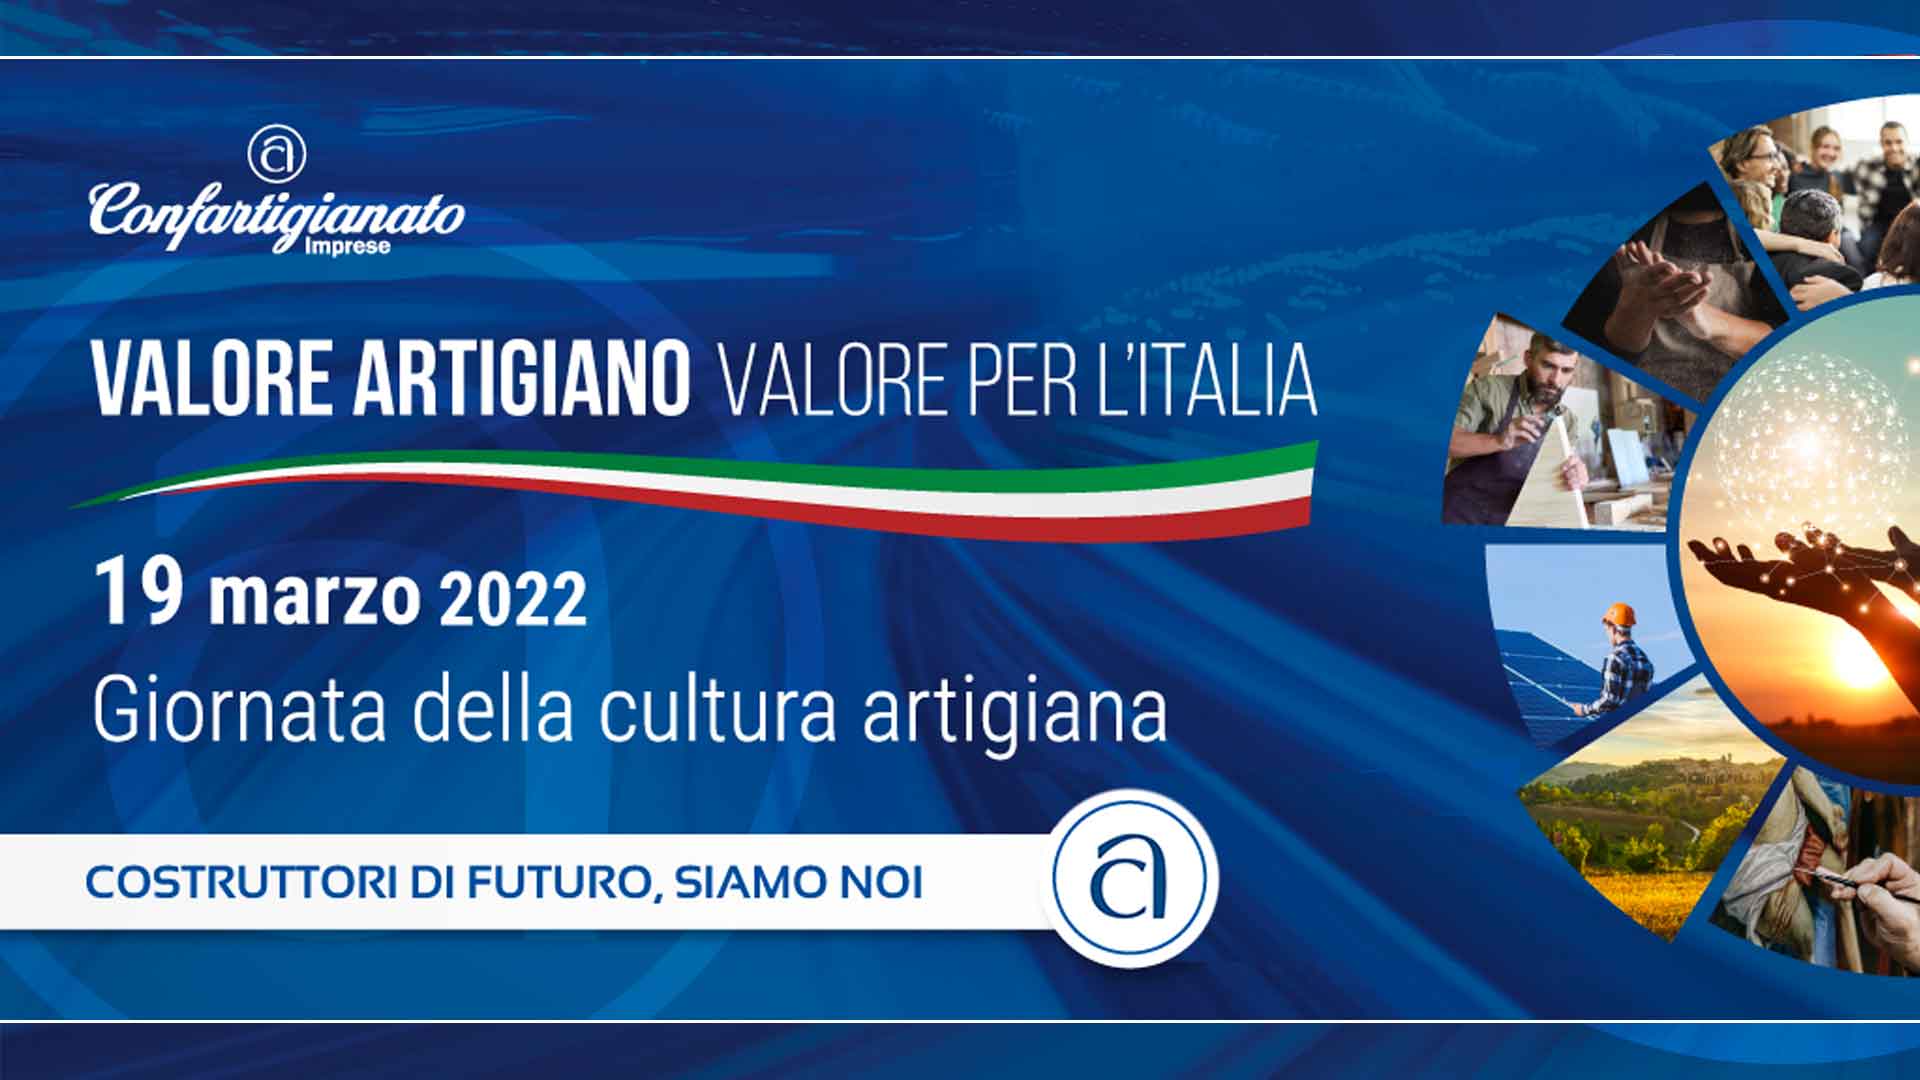 EVENTO – Confartigianato celebra l’identità e l’orgoglio dell’Italia artigiana, con "La Giornata del Valore Artigiano"